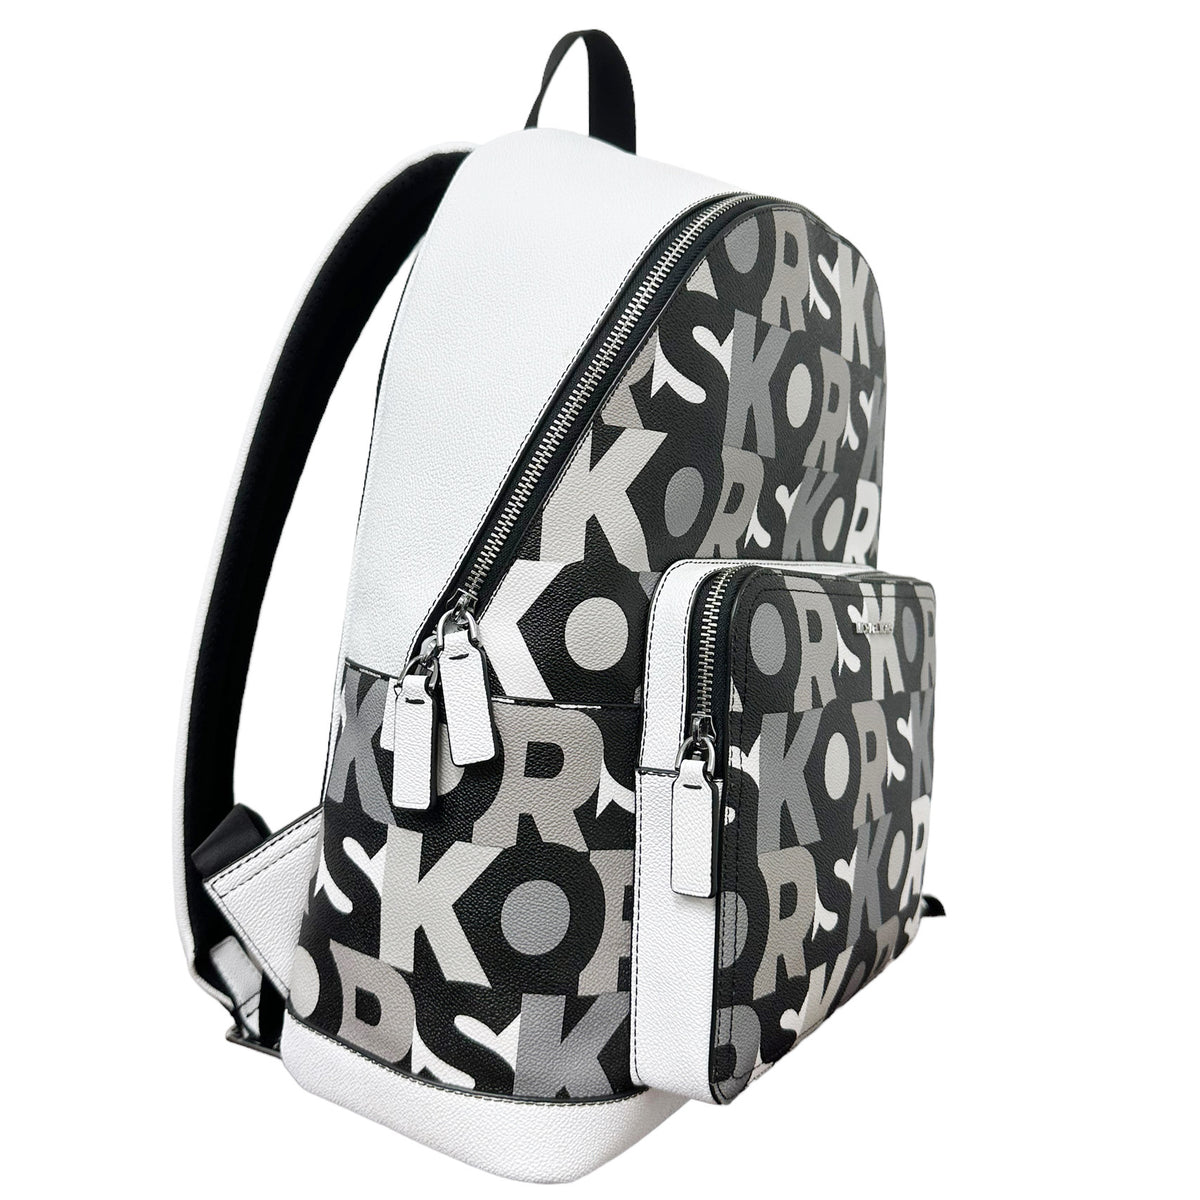 Michael Kors Cooper Black Signature PVC Graphic Logo Backpack Bookbag Bag –  Gaby's Bags